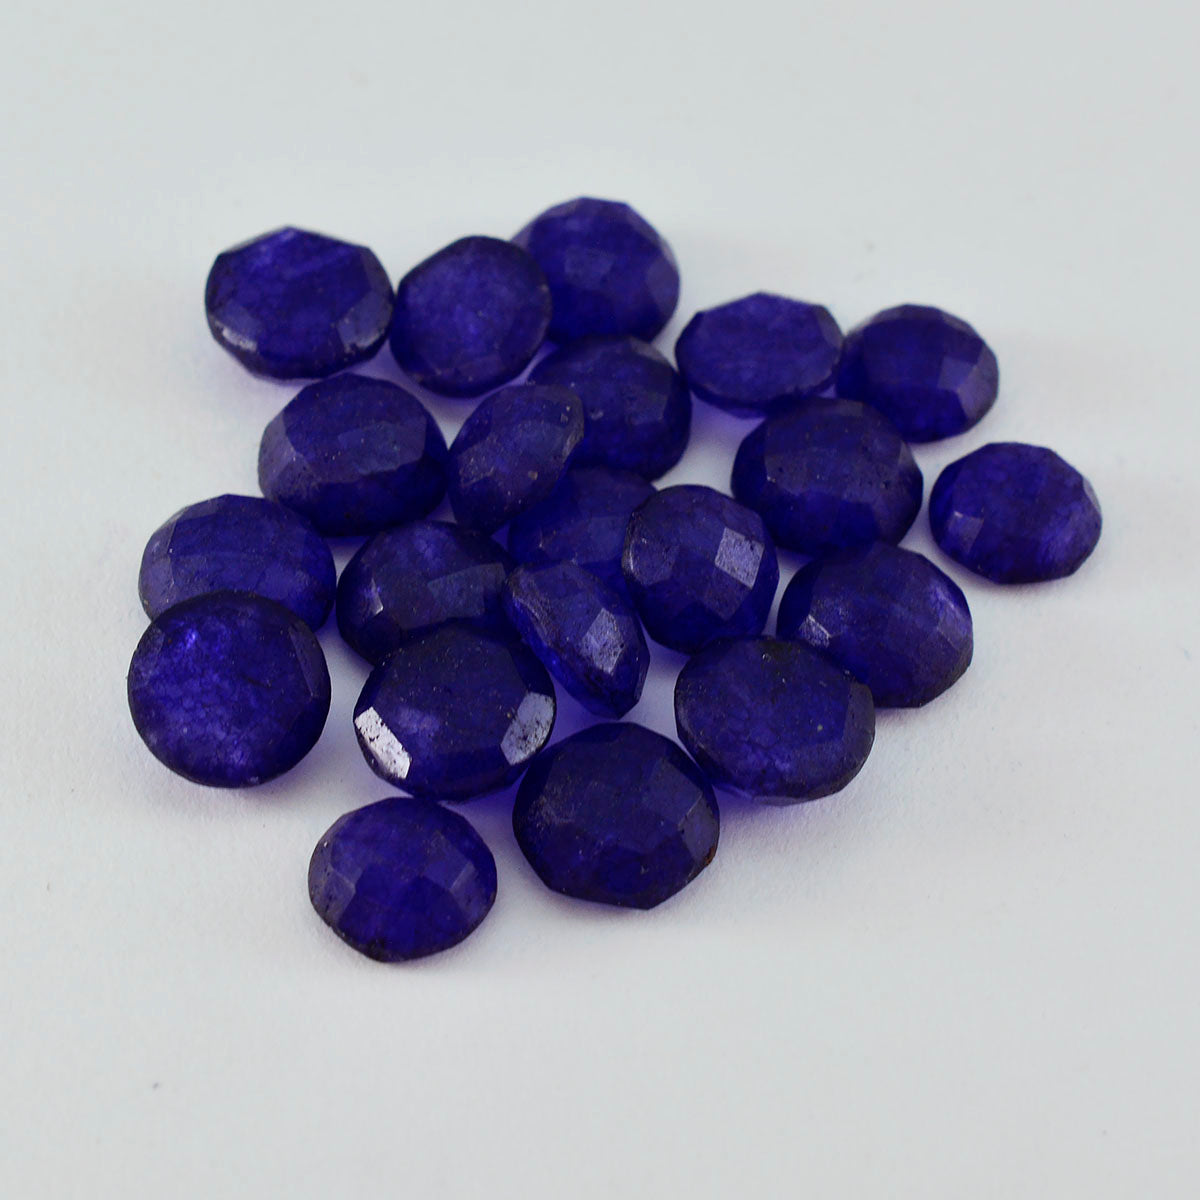 riyogems 1 шт. натуральная синяя яшма граненая 7x7 мм круглая форма милый качественный свободный драгоценный камень